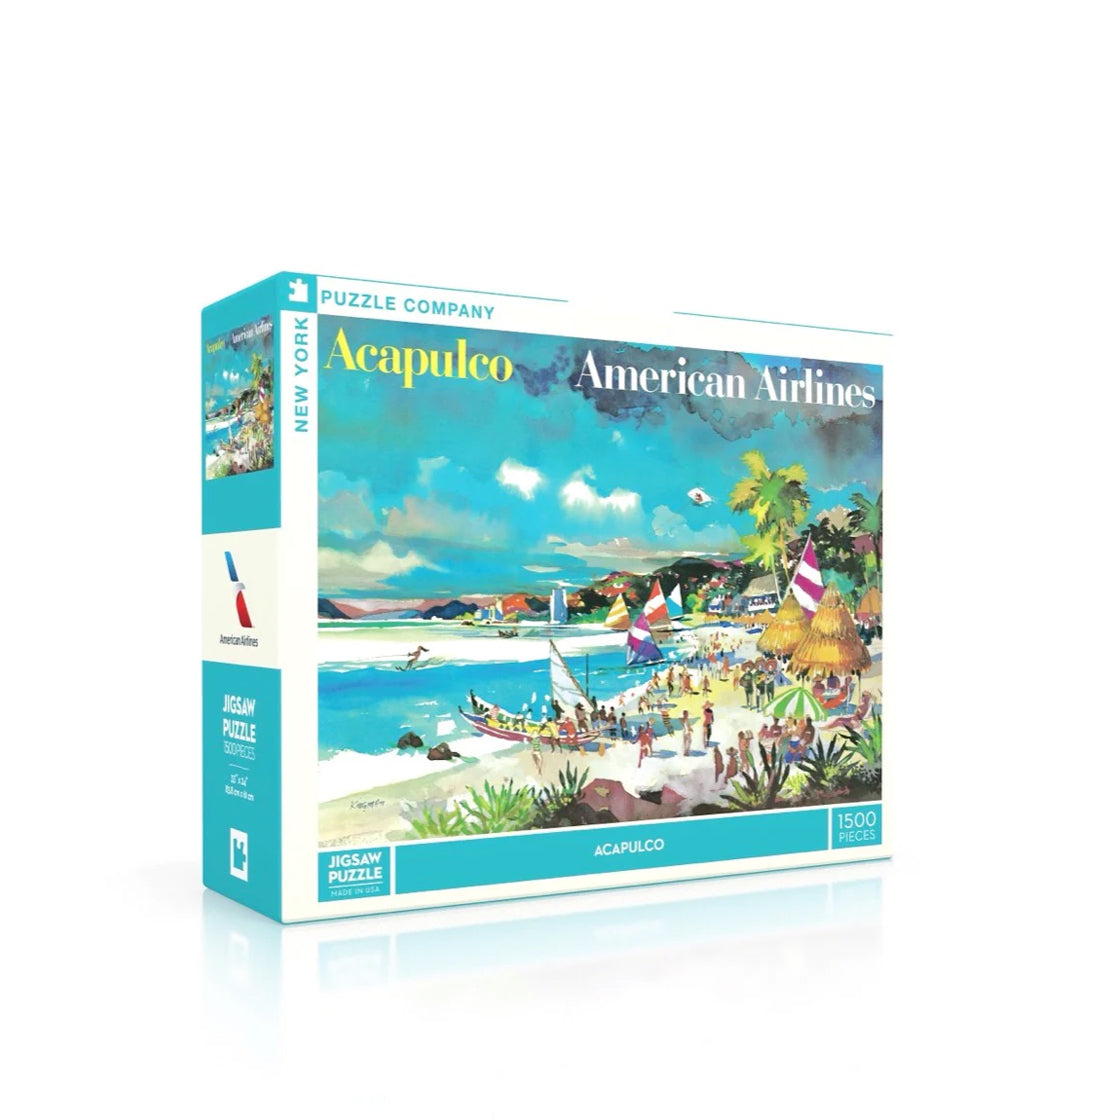 Puzzel American Airlines Acapulco│New York Puzzle Company 1500 stukjes│art. NPZAA2274│verpakking met schaduw